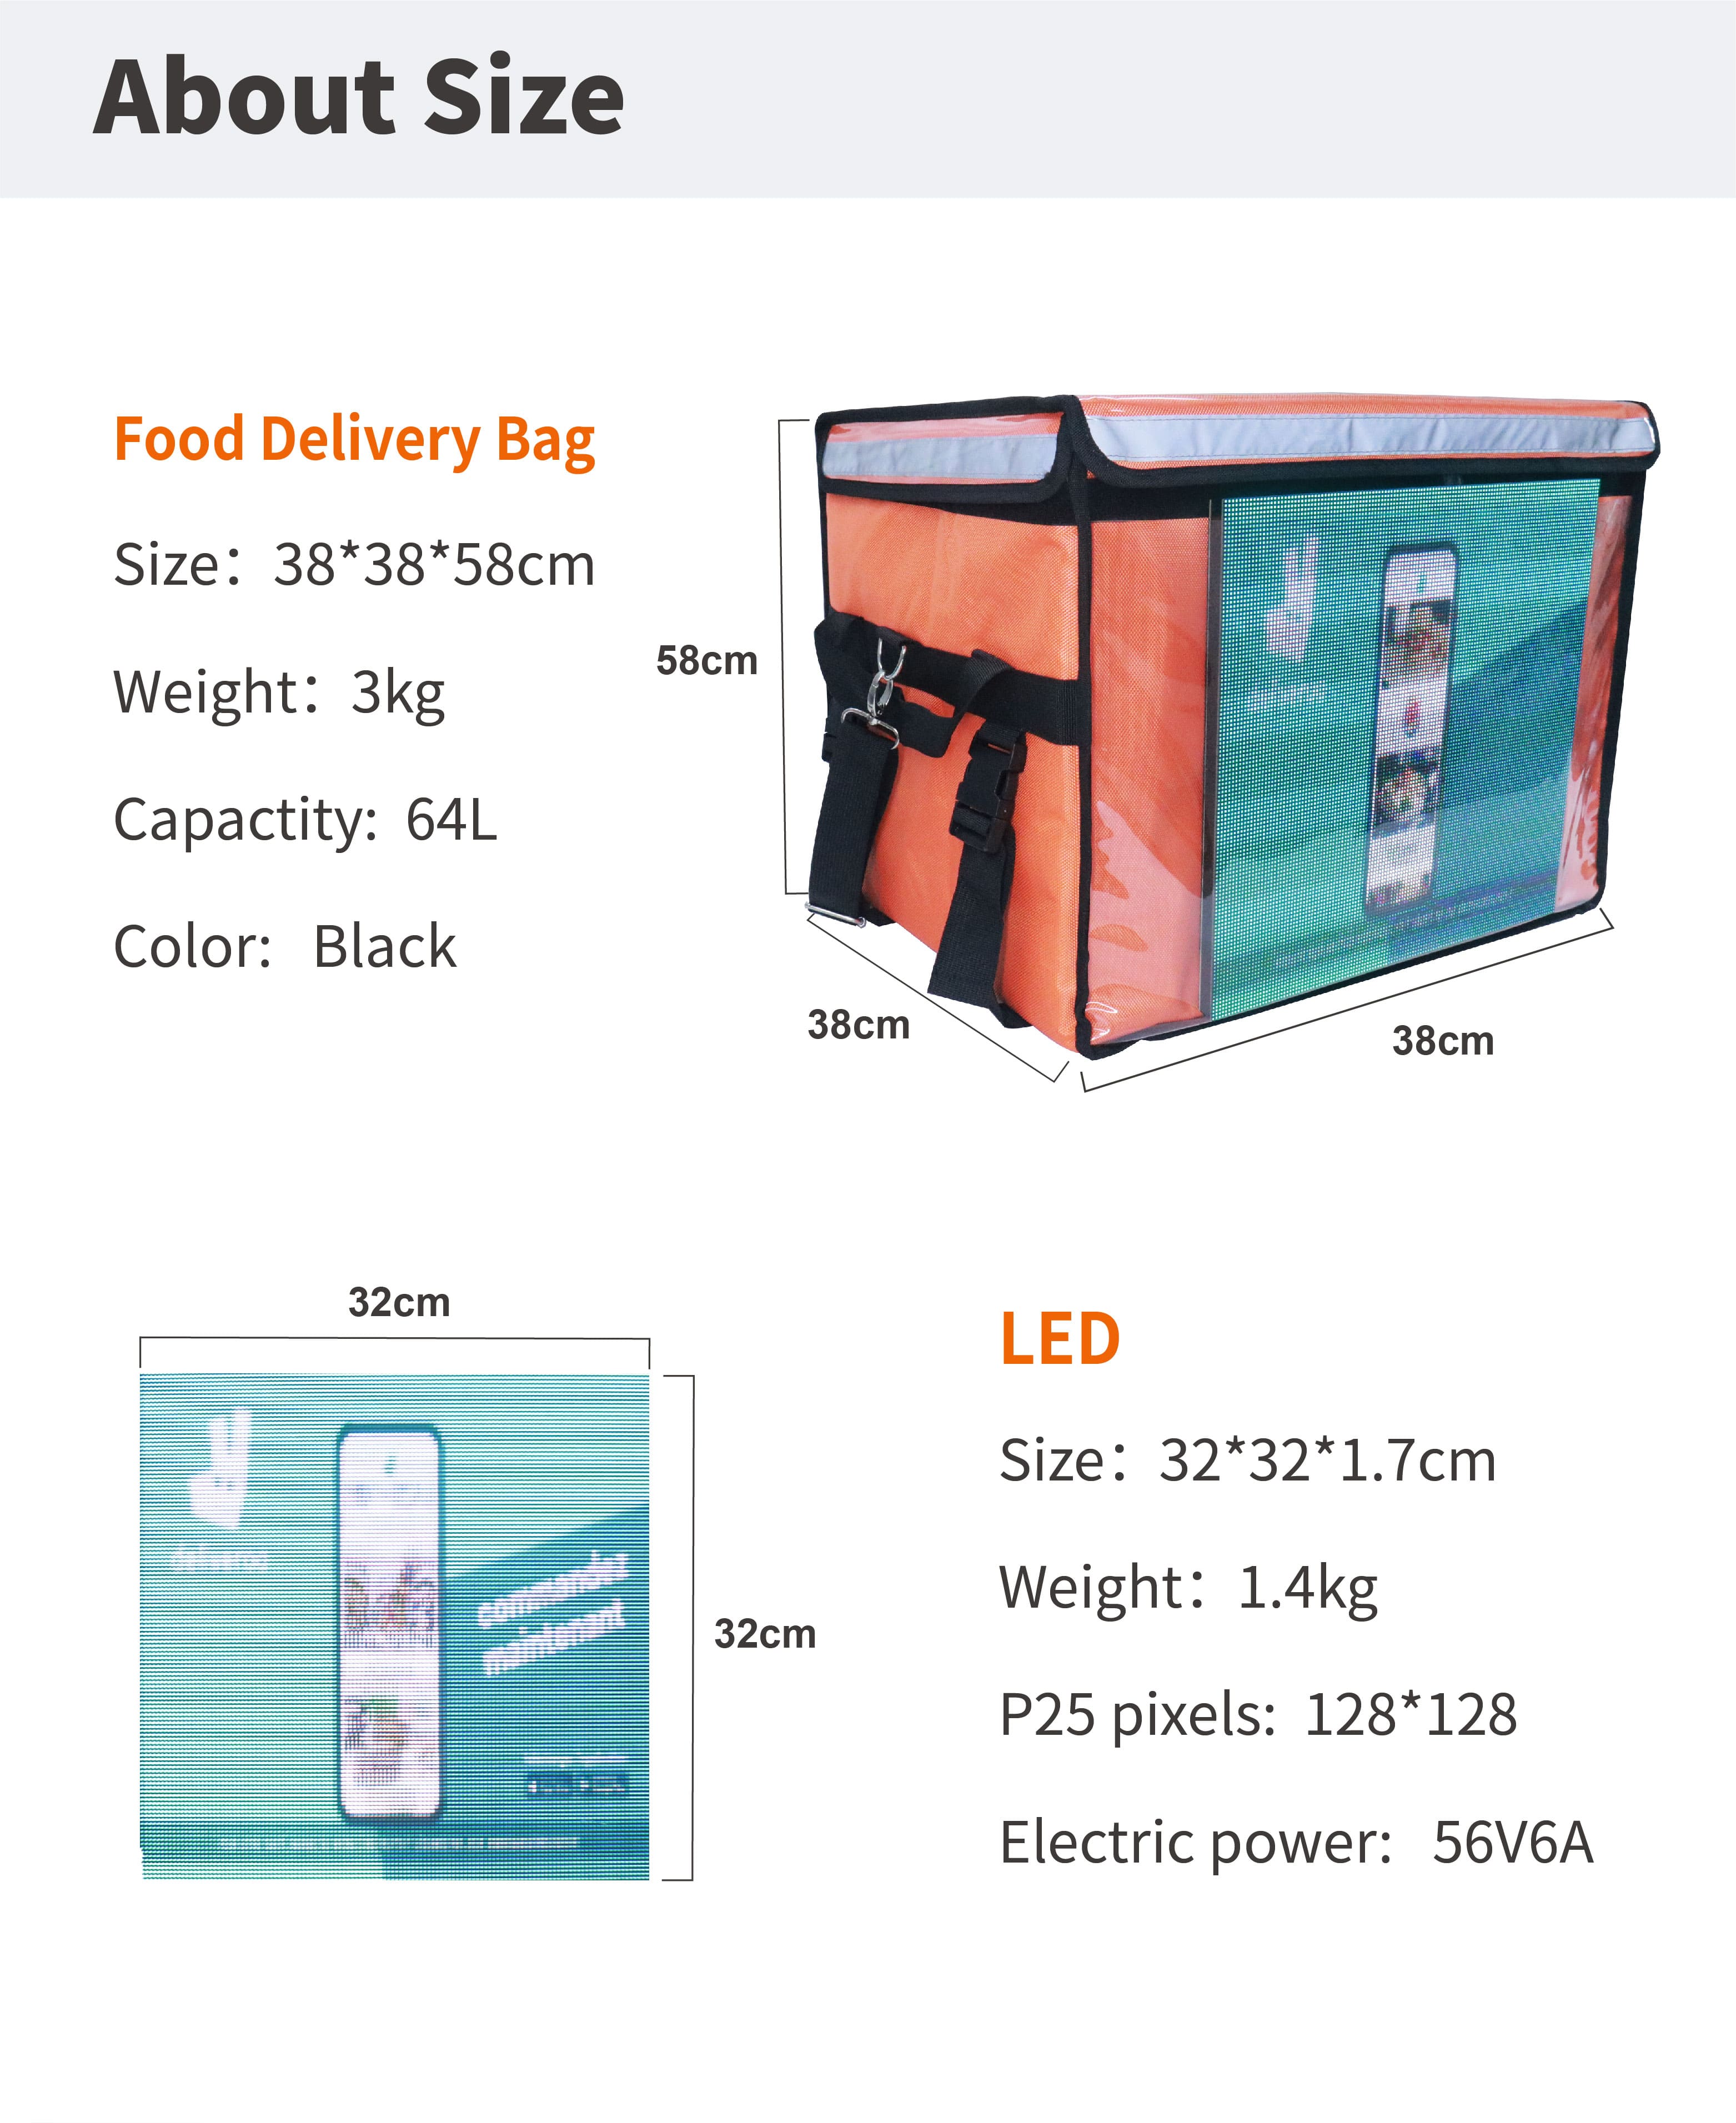 led food delivery bag